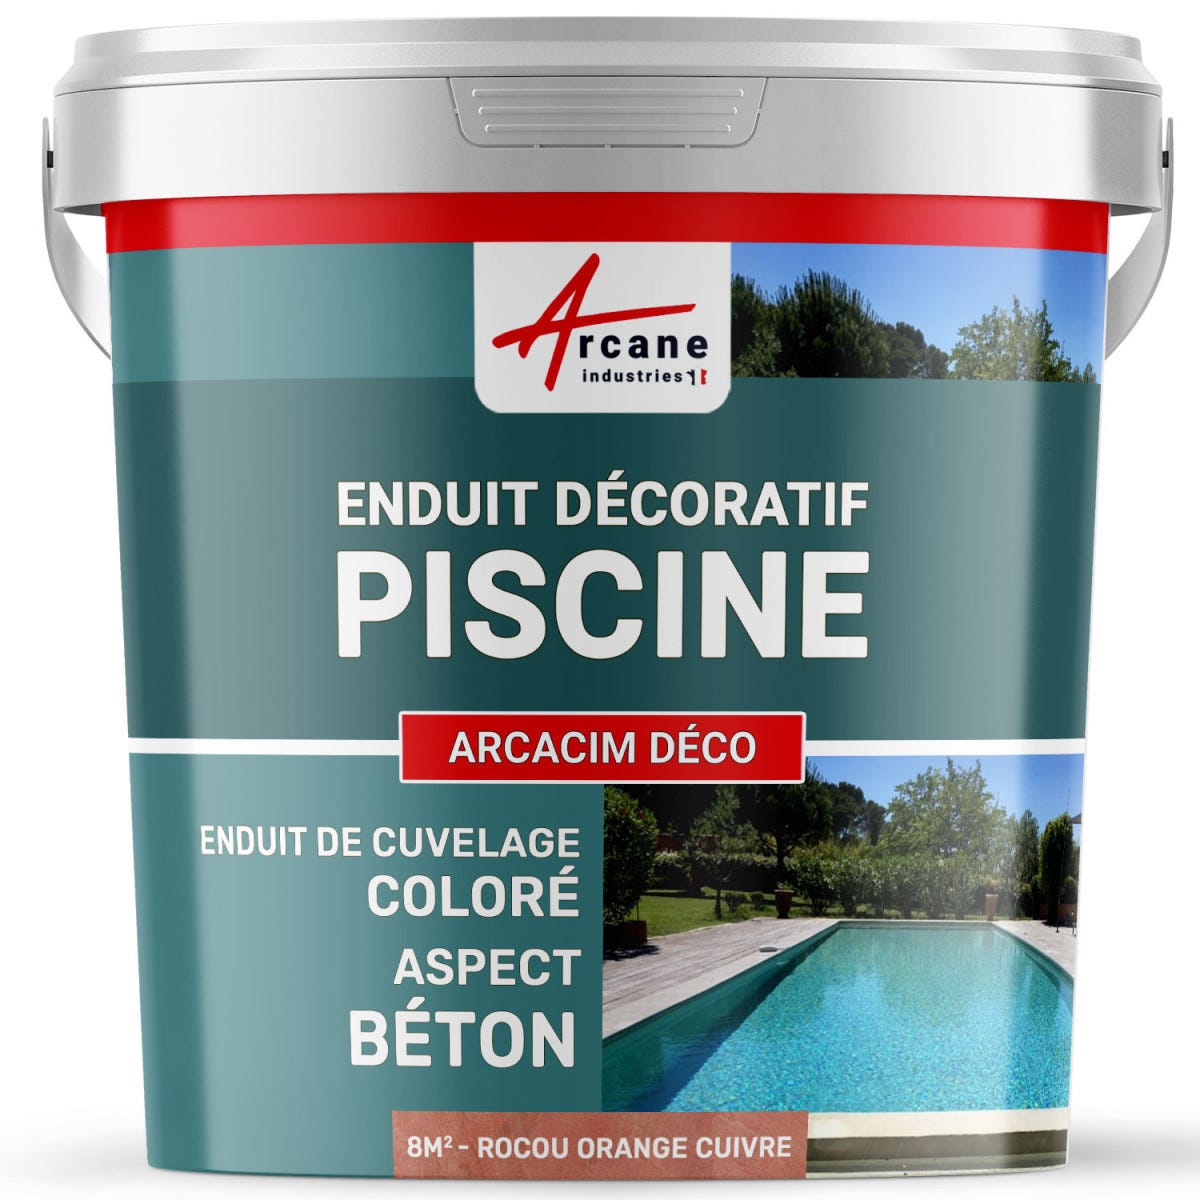 ENDUIT DE CUVELAGE PISCINE FINITION BETON CIRE - ARCACIM DECO - 8 m² - Rocou Orange Cuivre - ARCANE INDUSTRIES 0